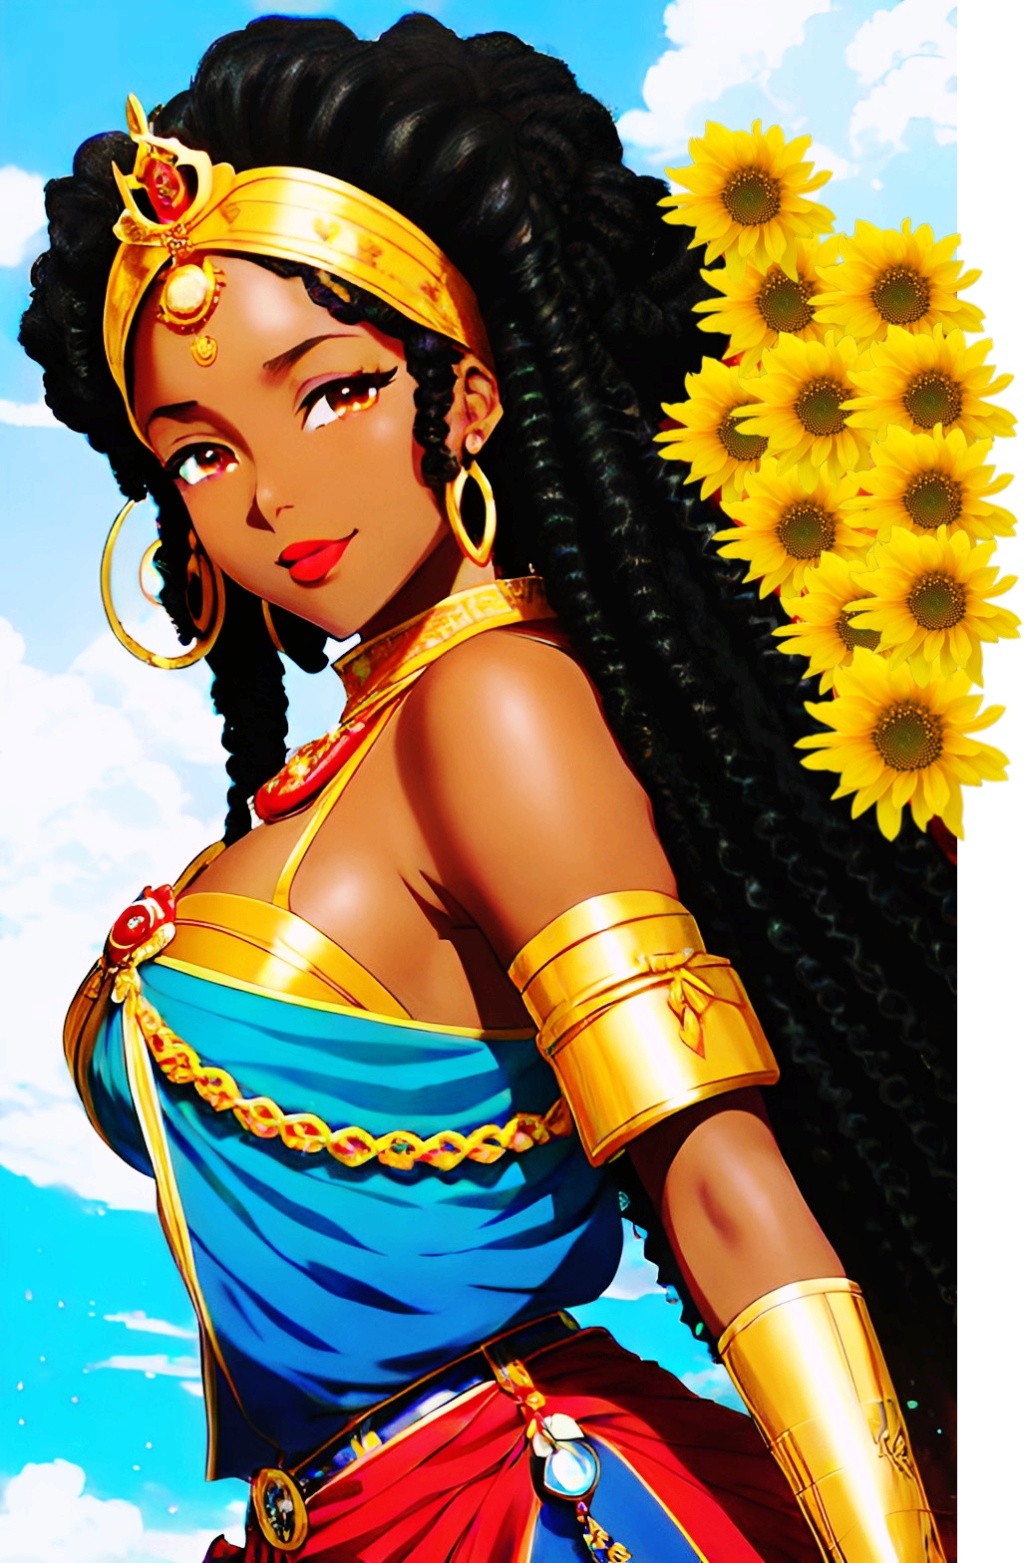 Mixed-race Queen of SHEBA art work Mixed418